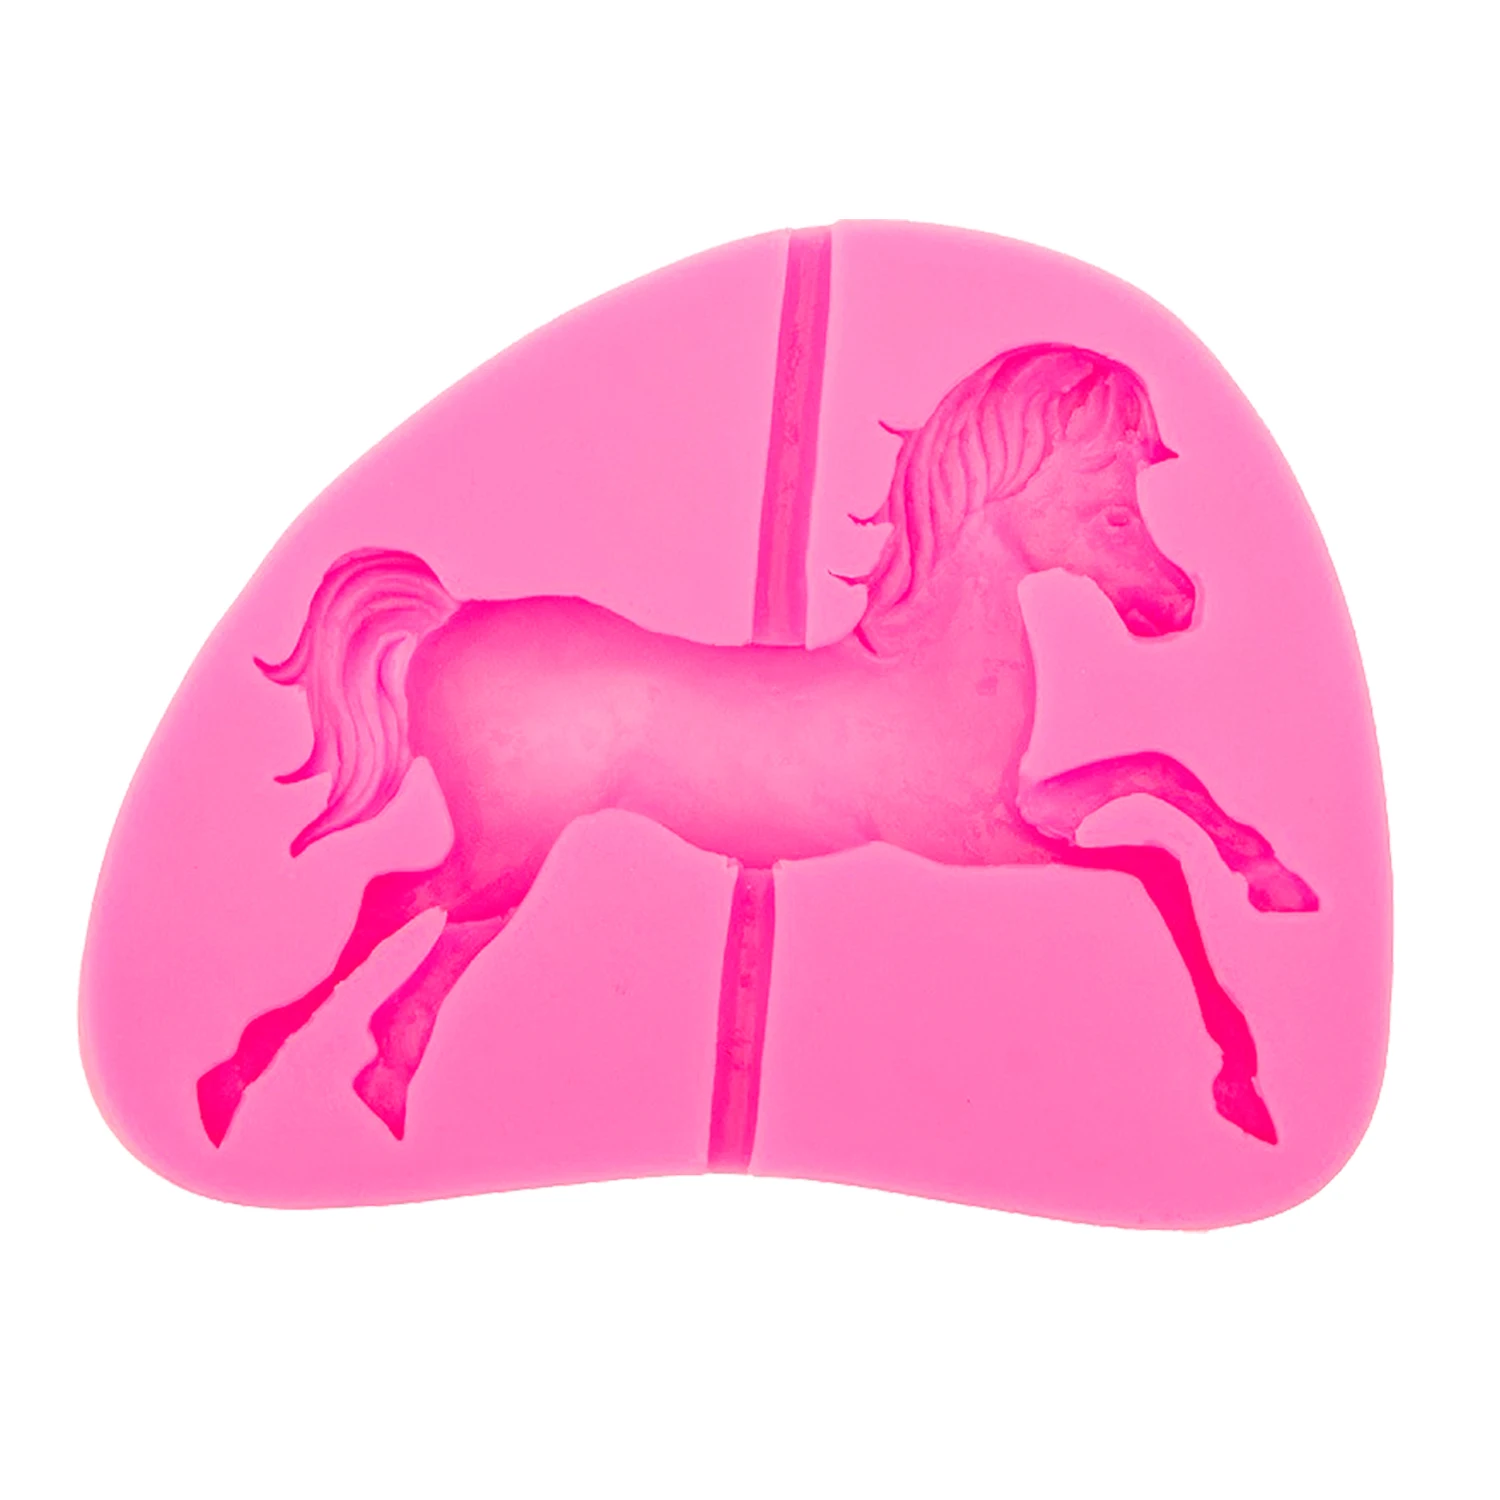 M0552 троянская лошадь форма силиконовая форма для выпечки формы торта Patry инструменты для украшения торта